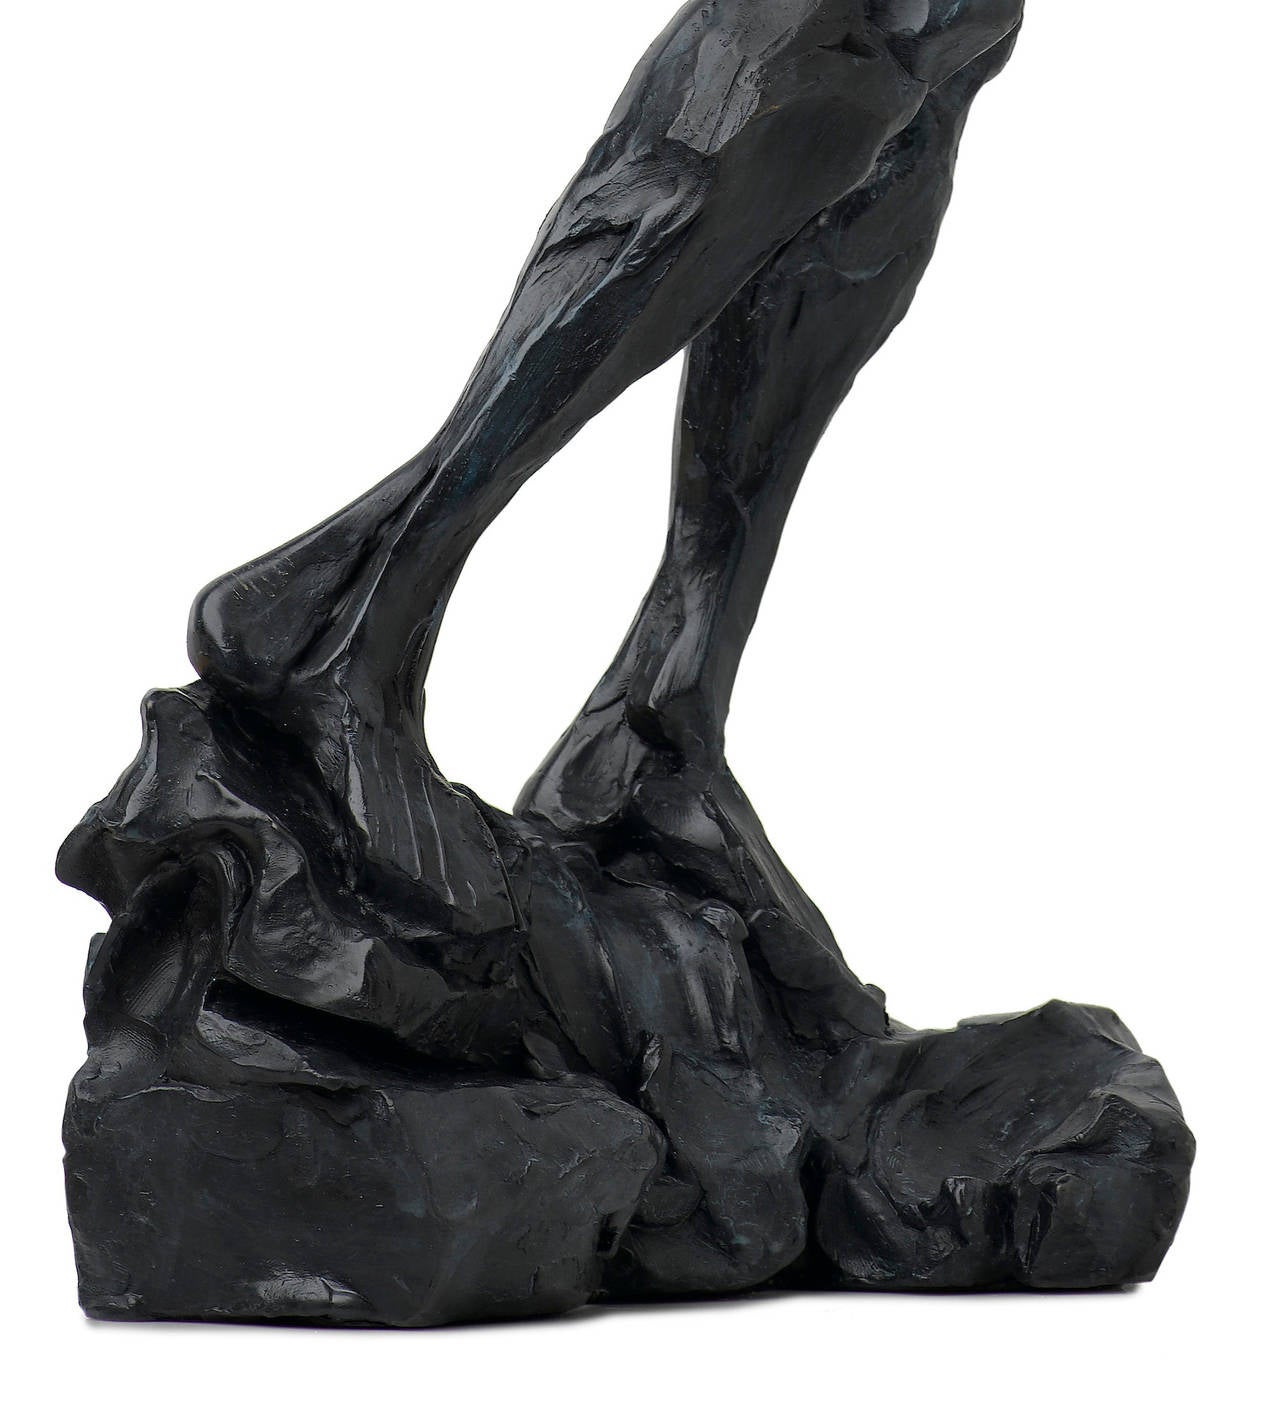 Kräftiger weiblicher Bronzeakt, der sich in einer Übergangsbewegung befindet. Die Patina dieser strukturierten Skulptur ist ein tiefes Blauschwarz. Der moderne und dynamische Formalismus, der vom Realismus abweicht, ermöglicht es dem Betrachter,